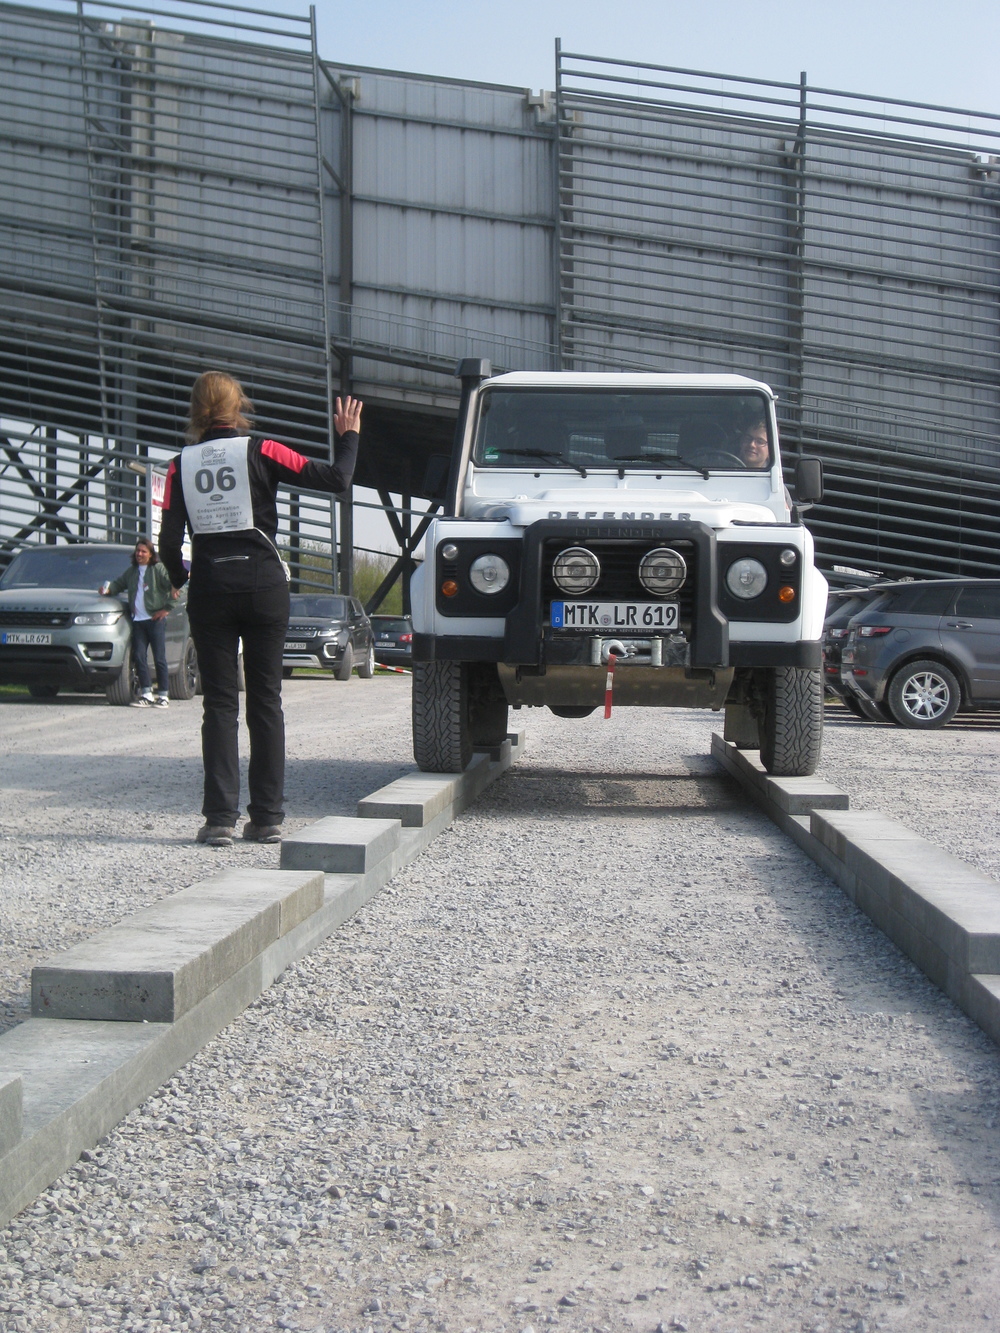 Teamwork mit dem Land Rover Defender